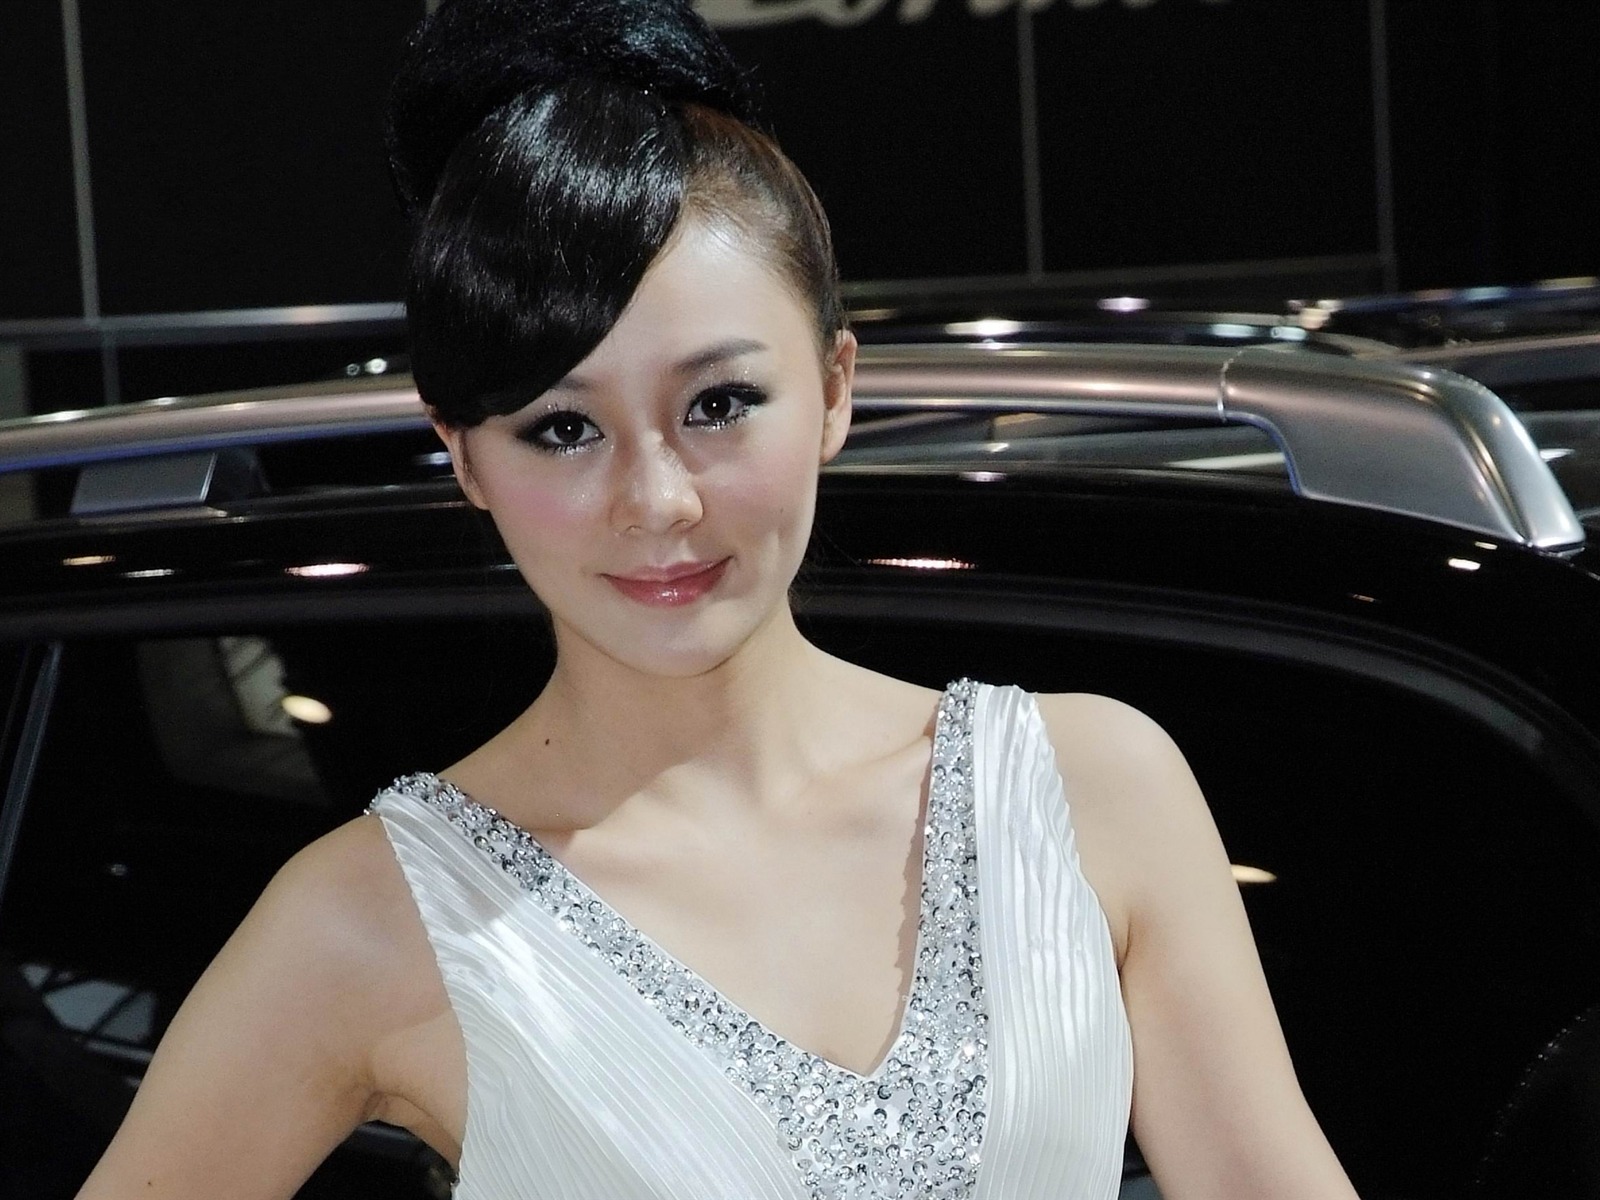 2010北京国际车展 美女车模 (螺纹钢作品)10 - 1600x1200